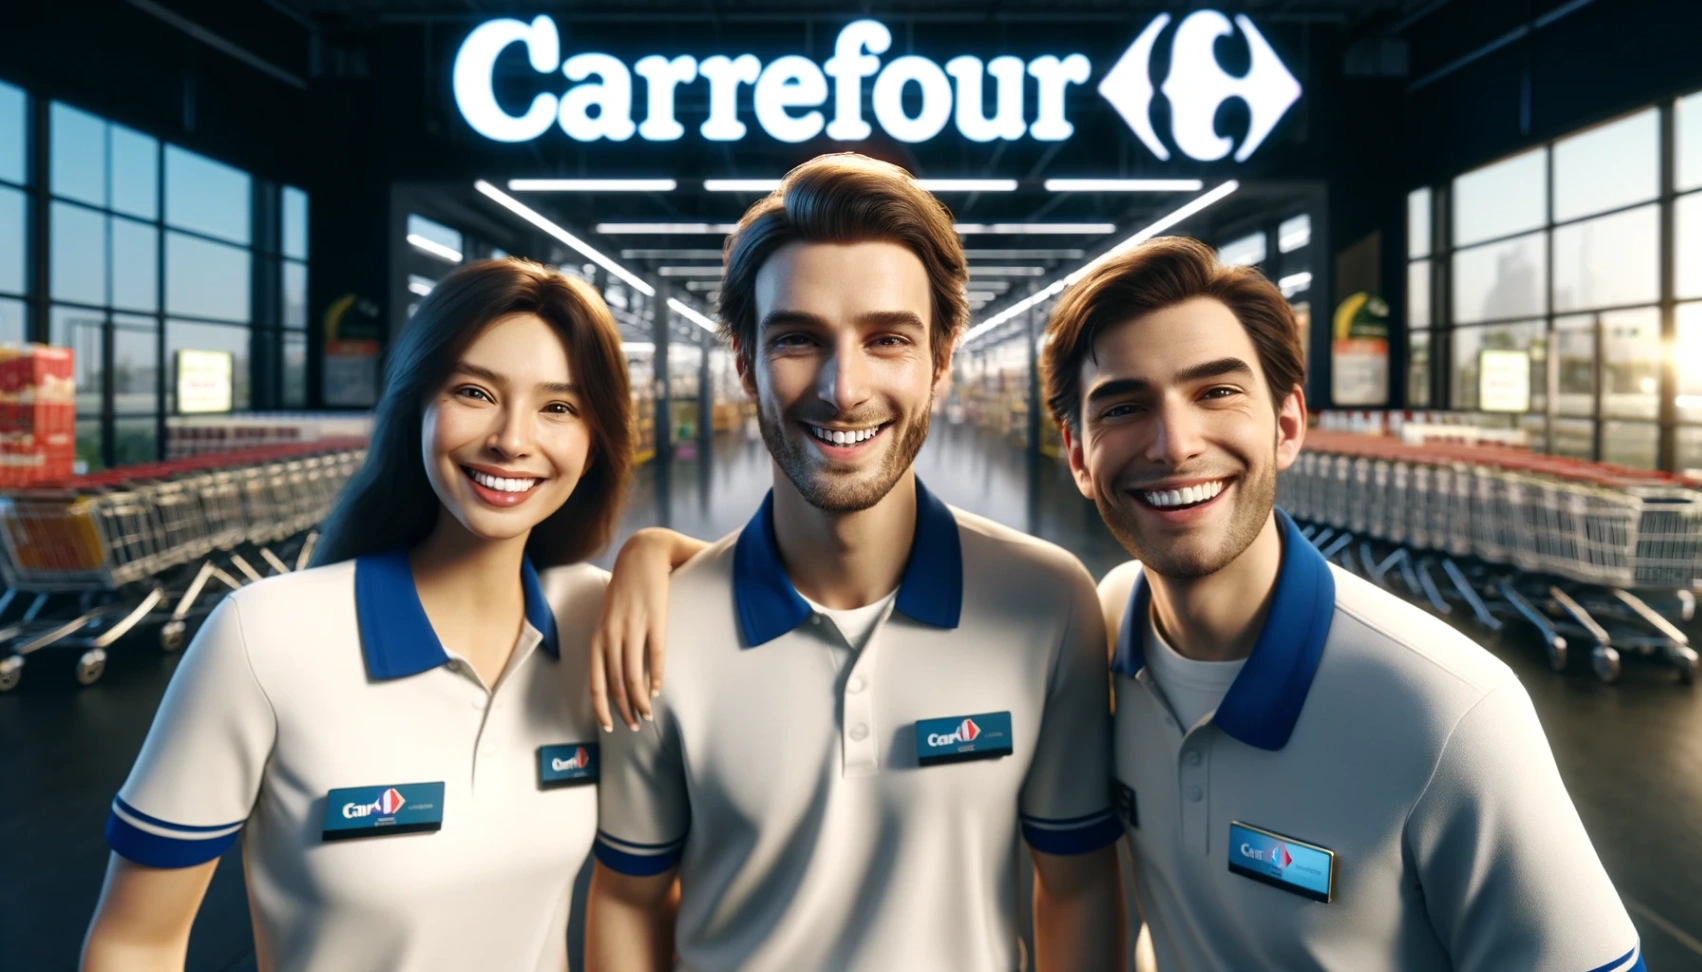 Carrefour Jobs Openings - Află cum să aplici